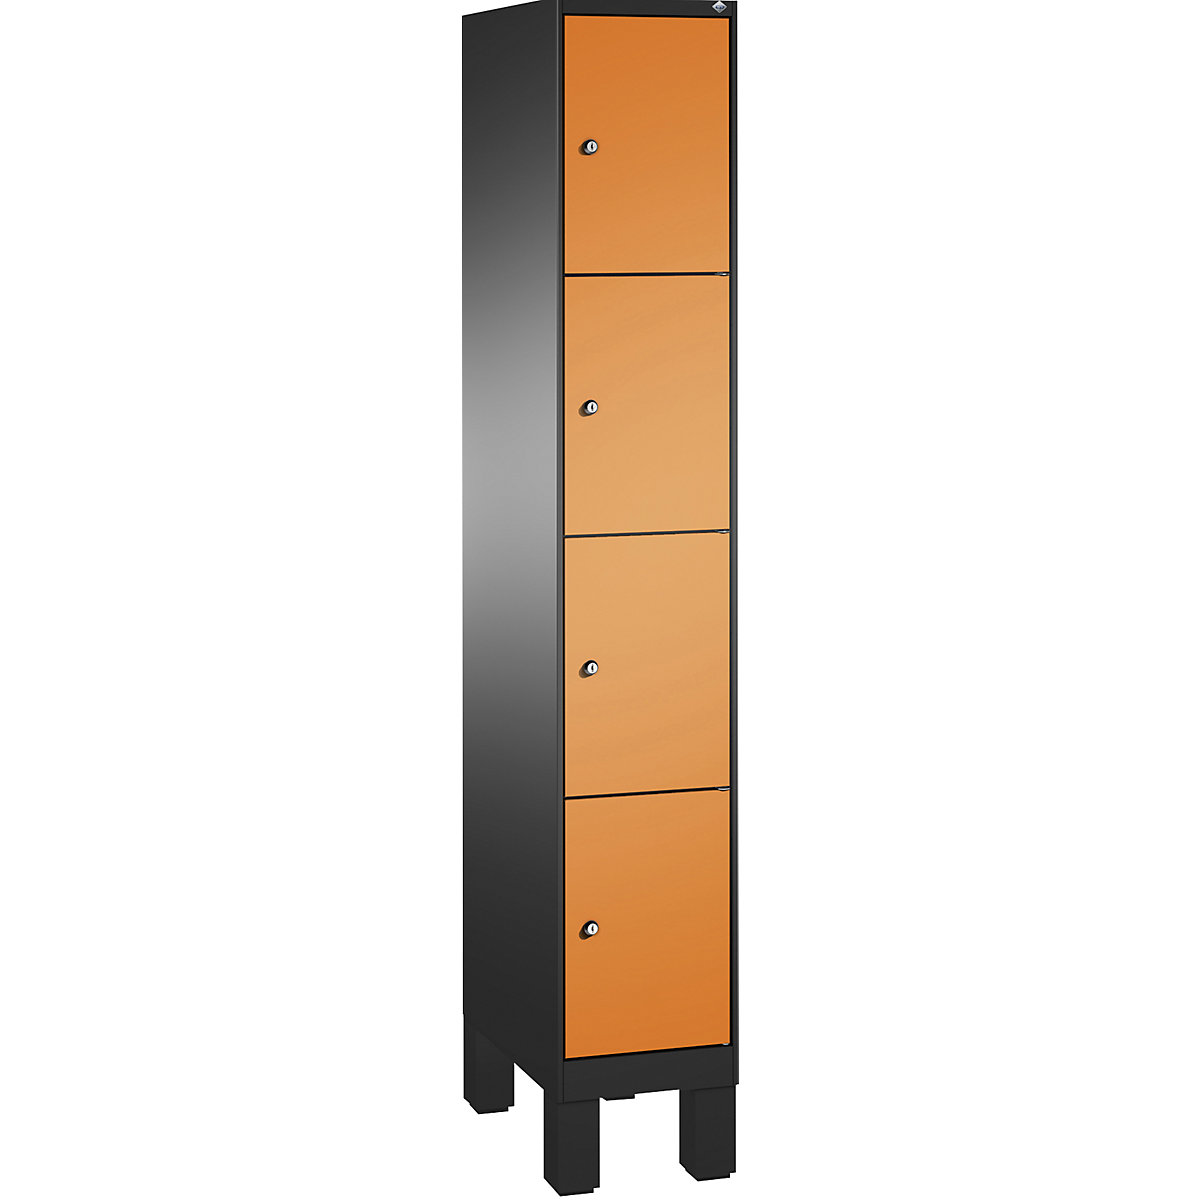 EVOLO locker unit, with feet – C+P, 1 compartment, 4 shelf compartments, compartment width 300 mm, black grey / yellow orange